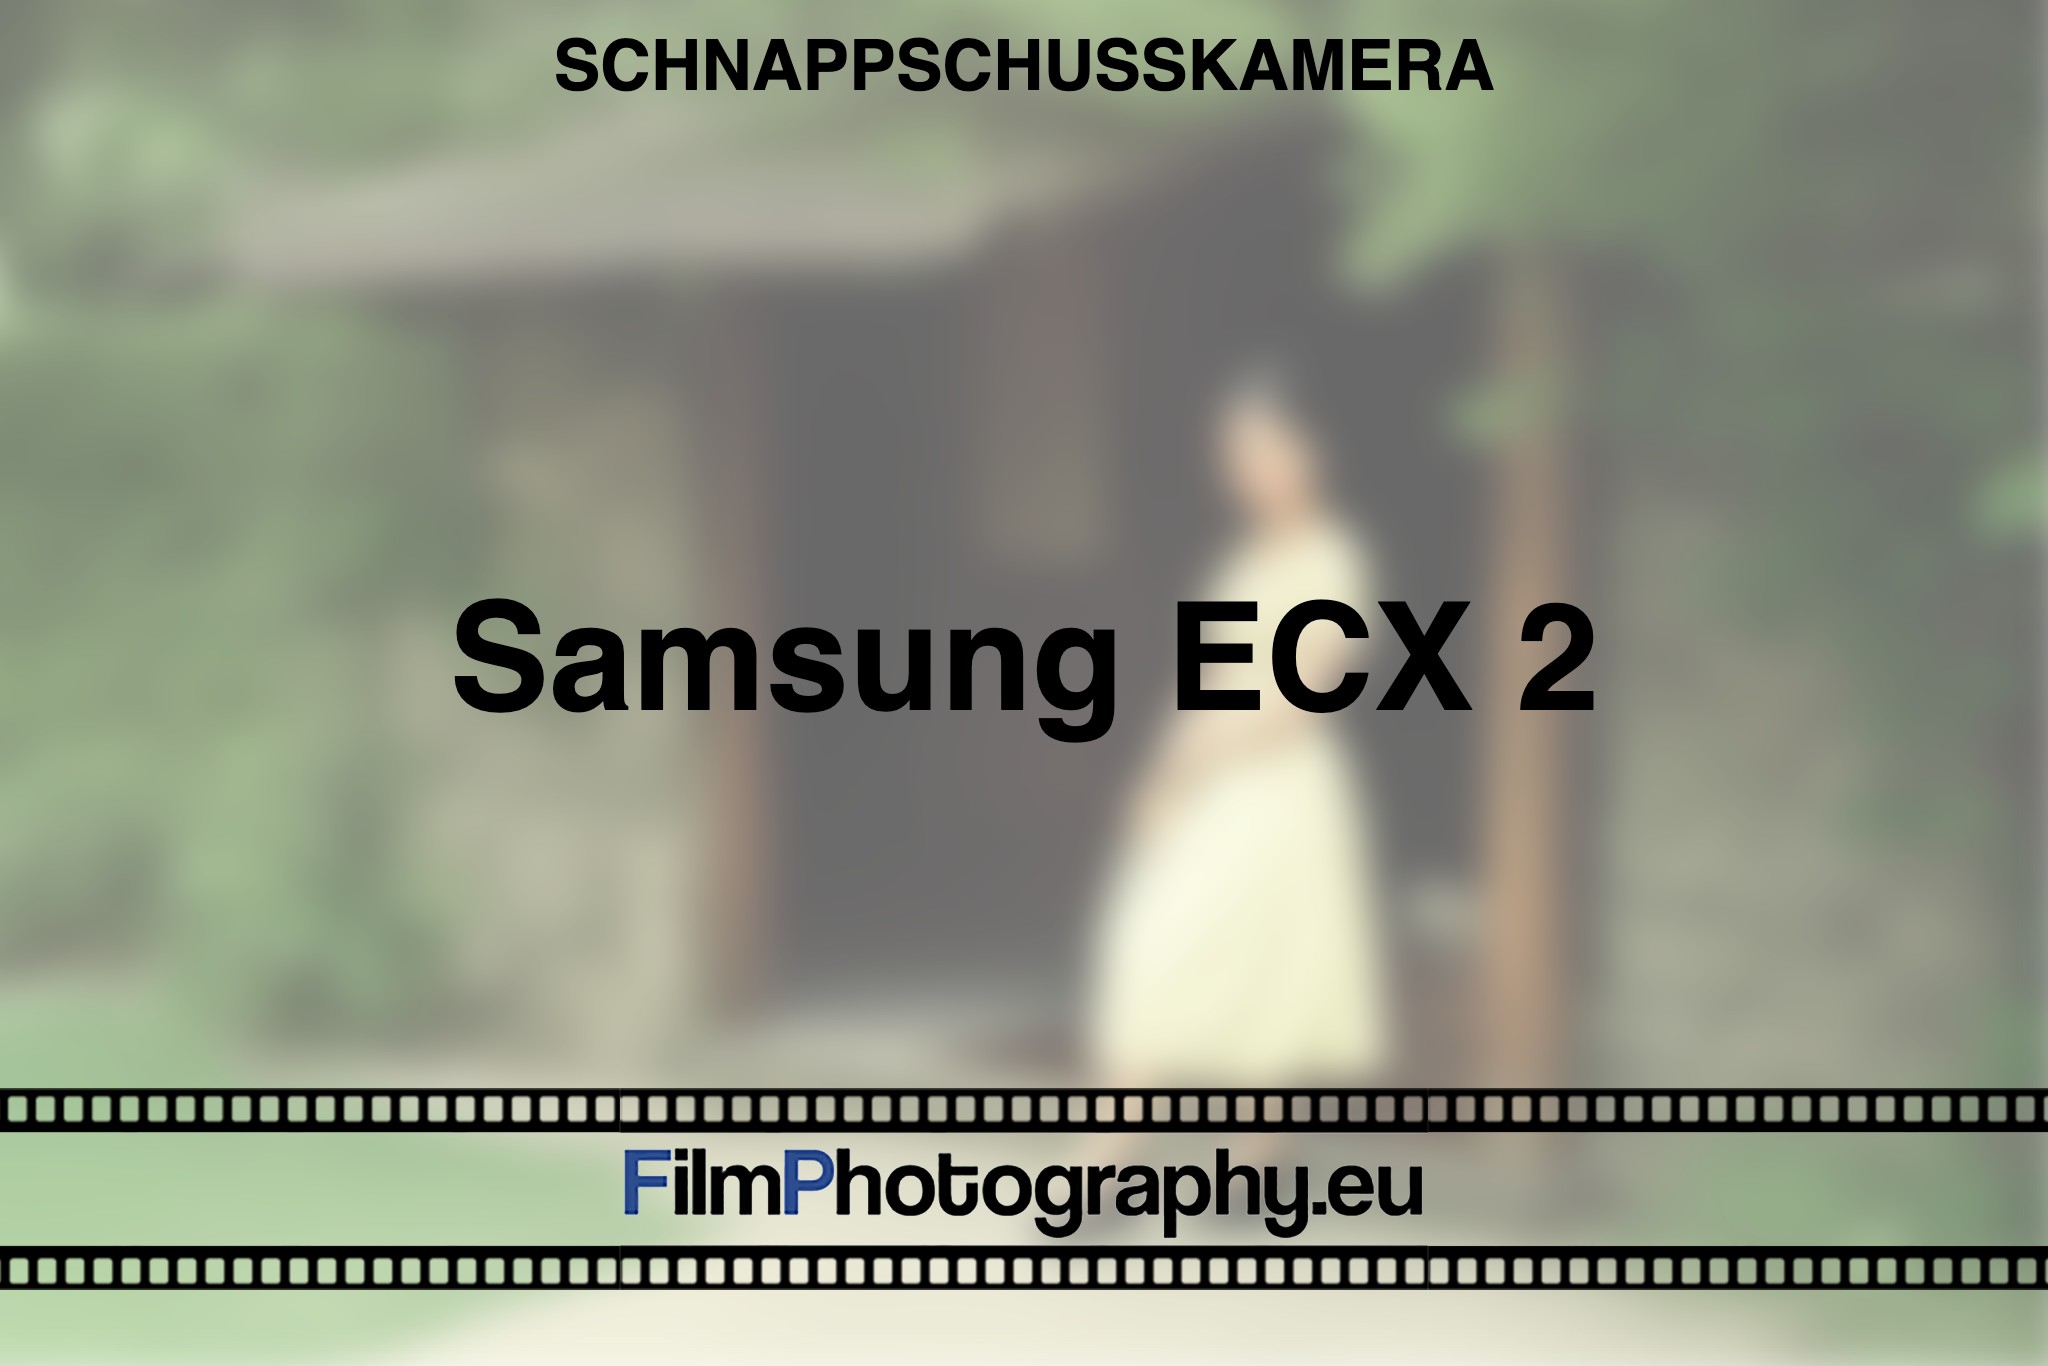 samsung-ecx-2-schnappschusskamera-bnv